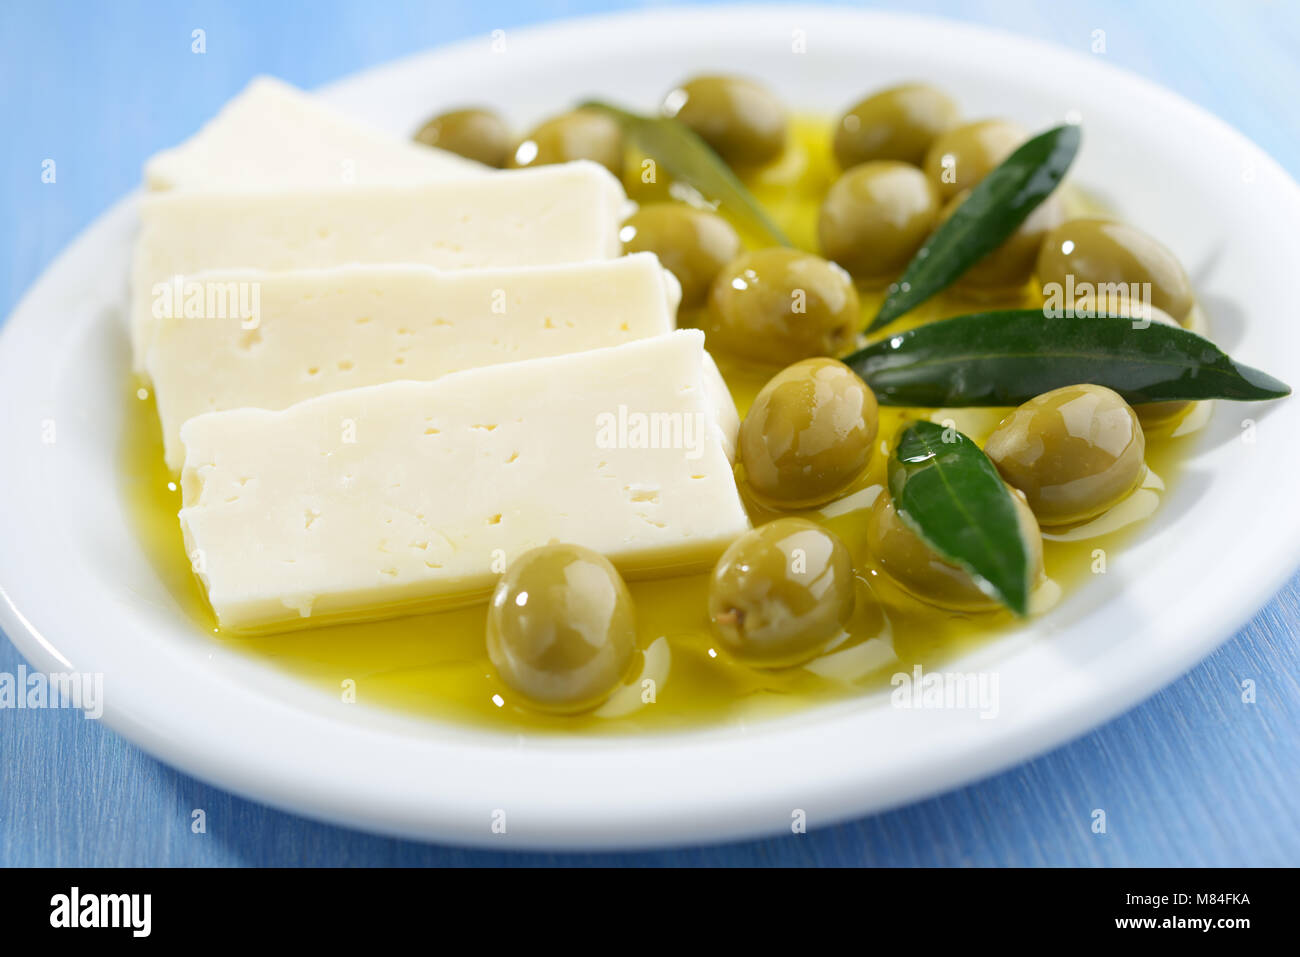 Tranches de fromage Feta et olives vertes sur une plaque Banque D'Images